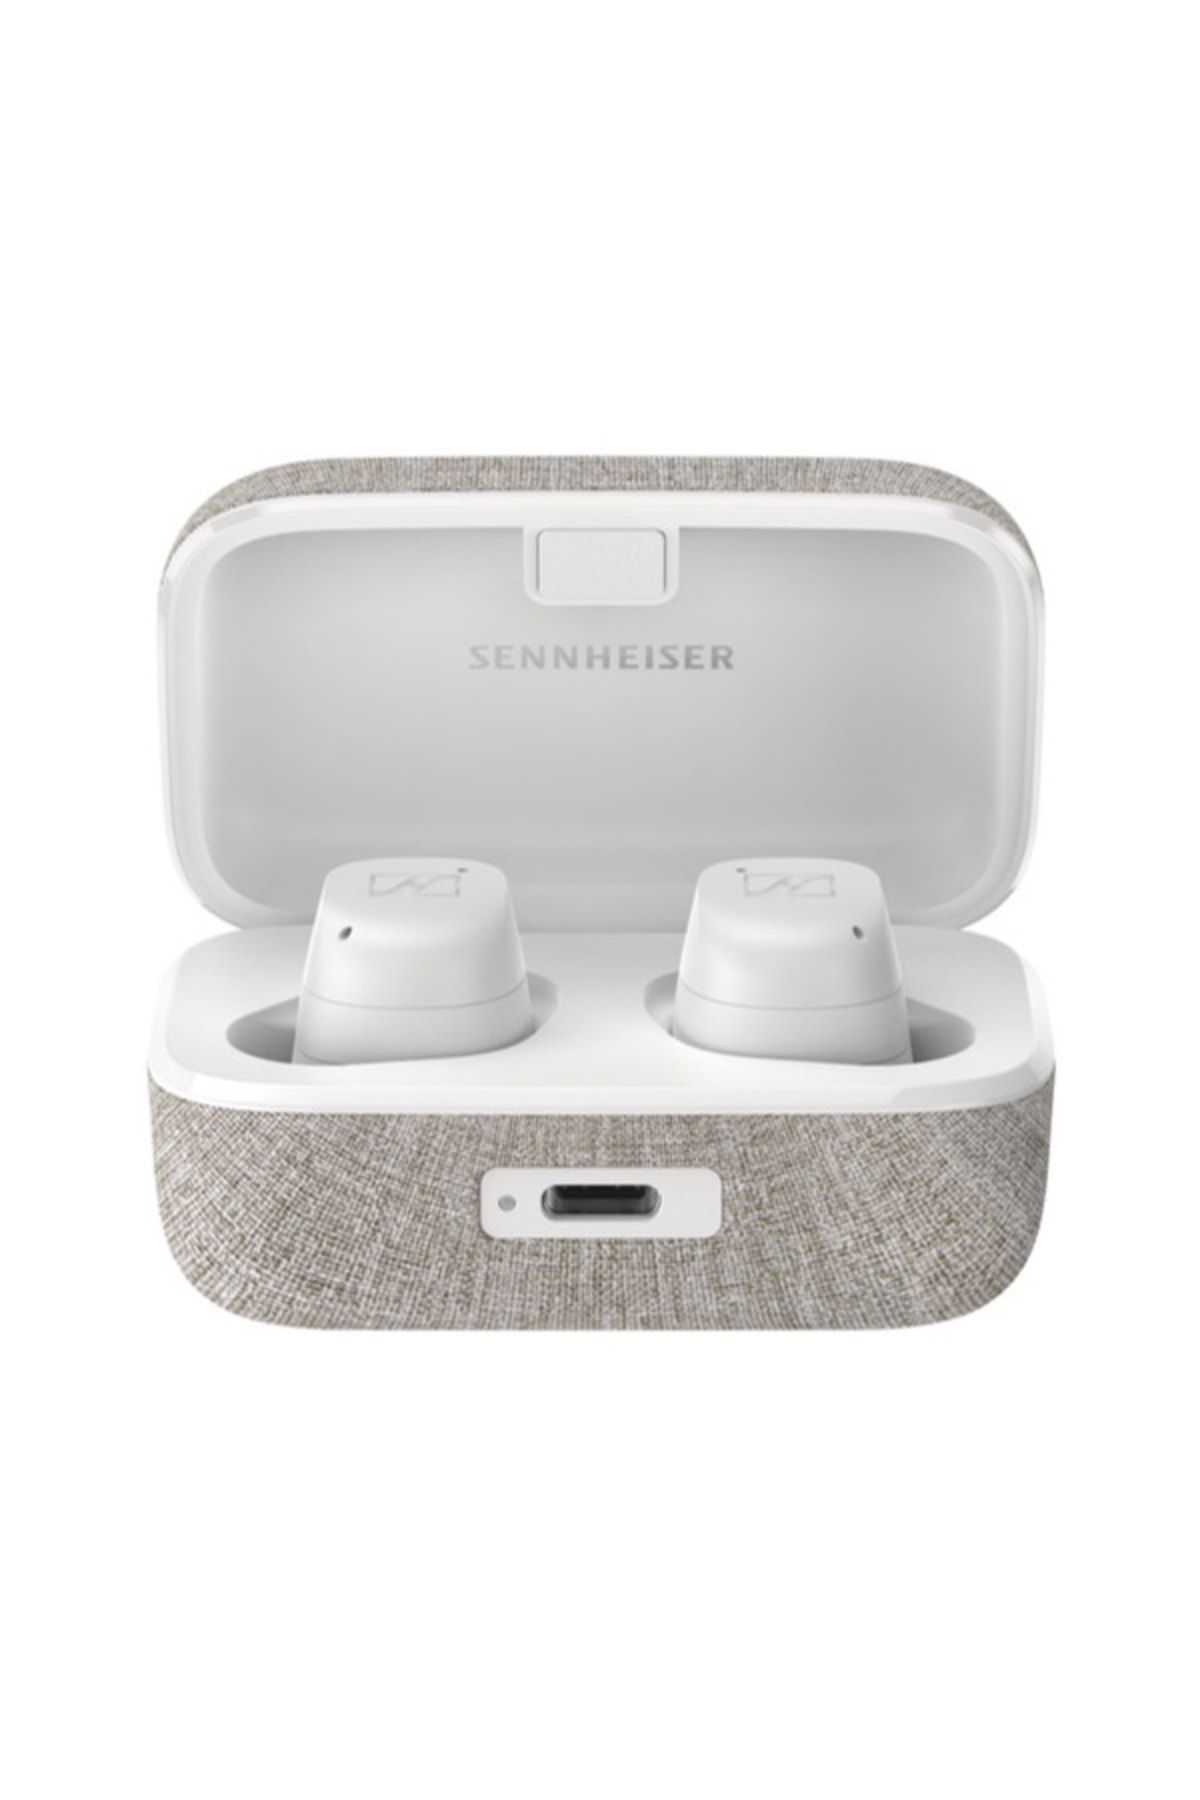 Sennheiser Momentum True Wireless 3 Beyaz Kulak Içi Kulaklık (Sennheiser Türkiye Garantili)